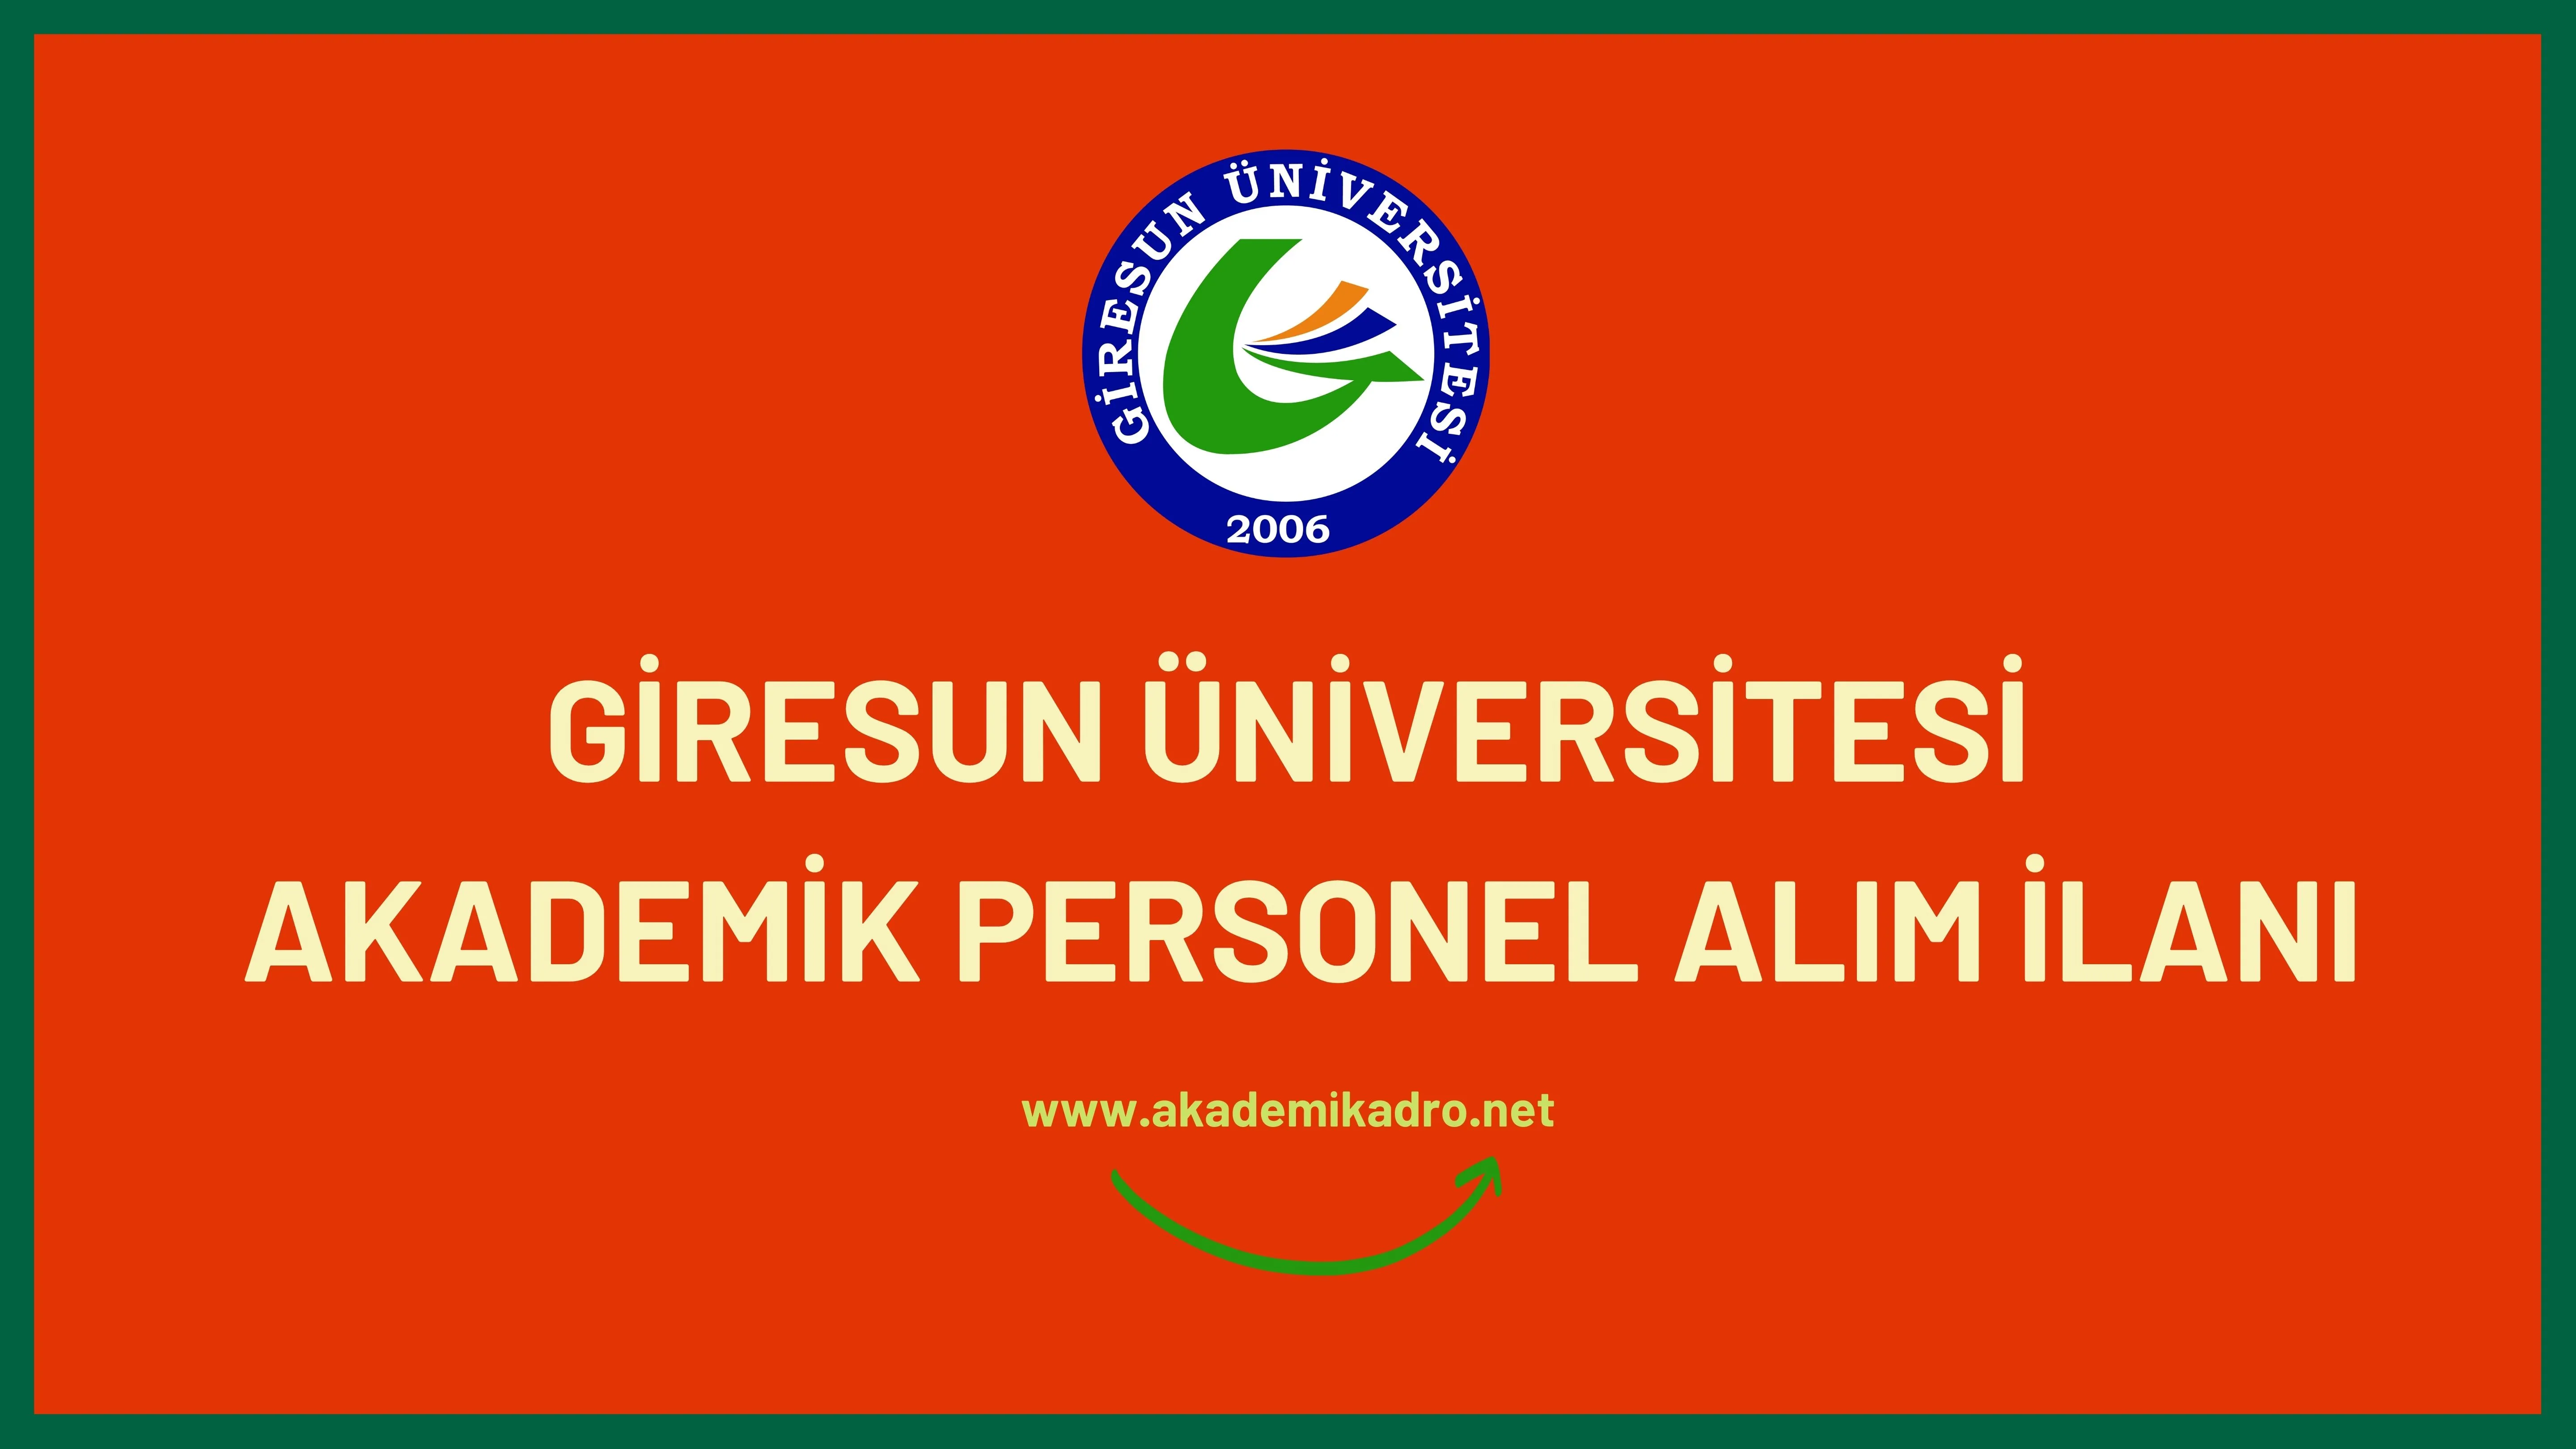 Giresun Üniversitesi birçok alandan 22 akademik personel alacak.